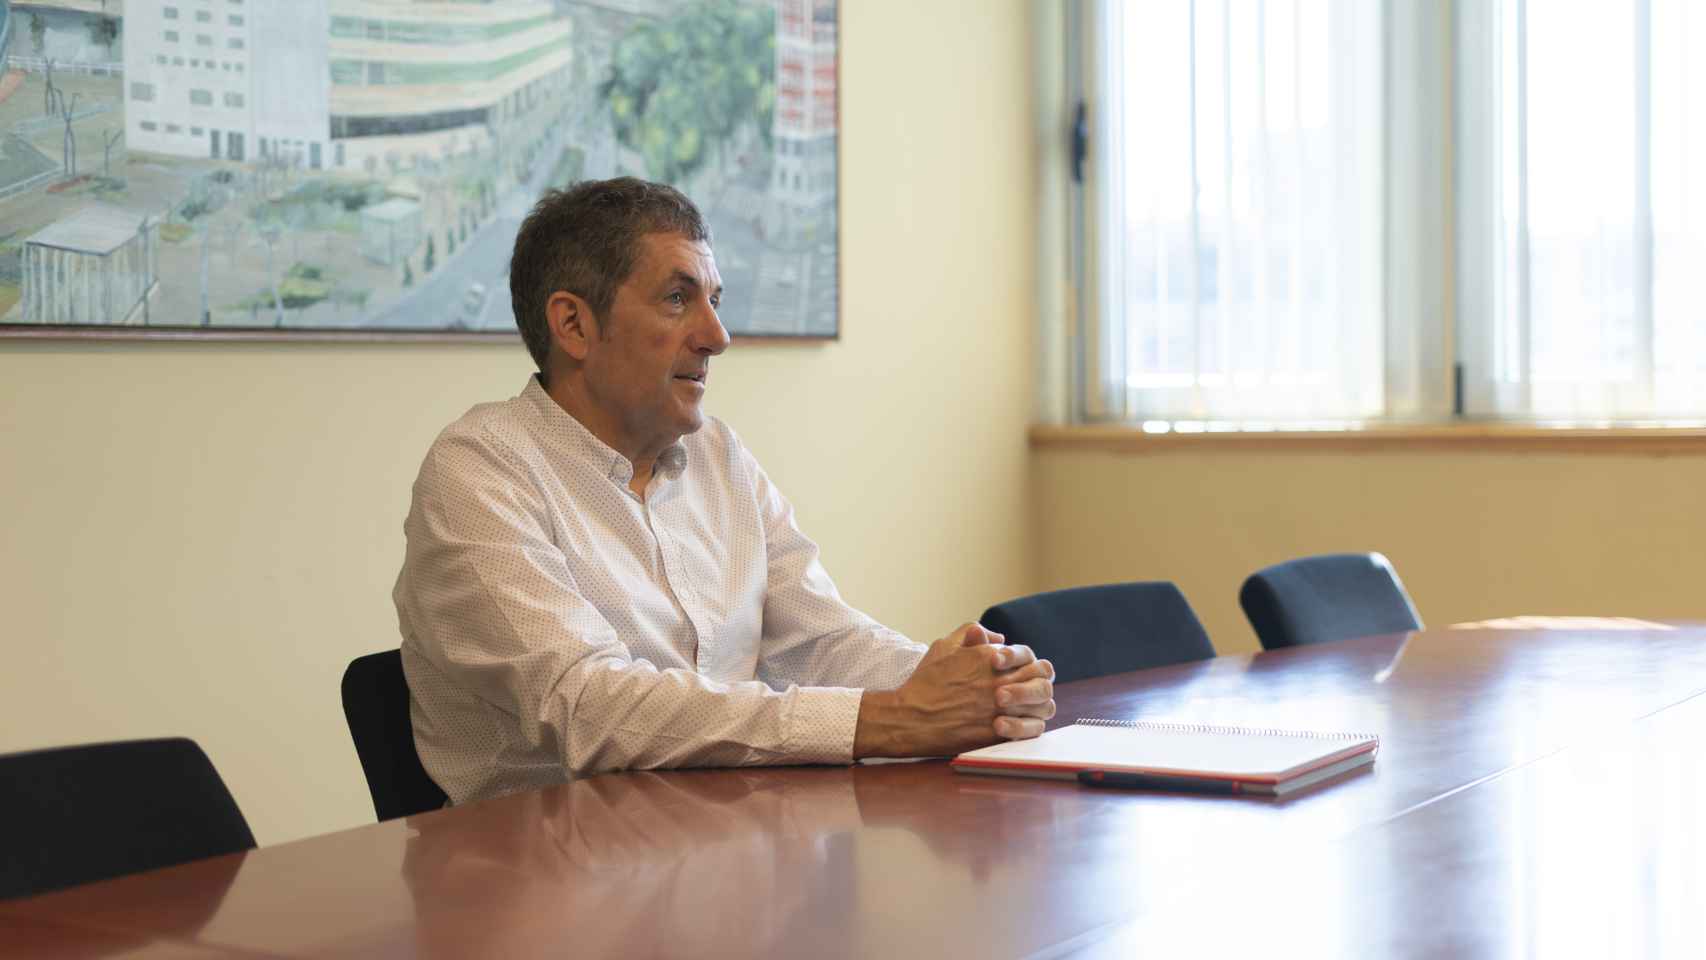 La tasa de producción actual es de 2 viviendas por cada 1.000 habitantes tanto en Euskadi como a nivel estatal, advierte el Secretario General de Ascobi.